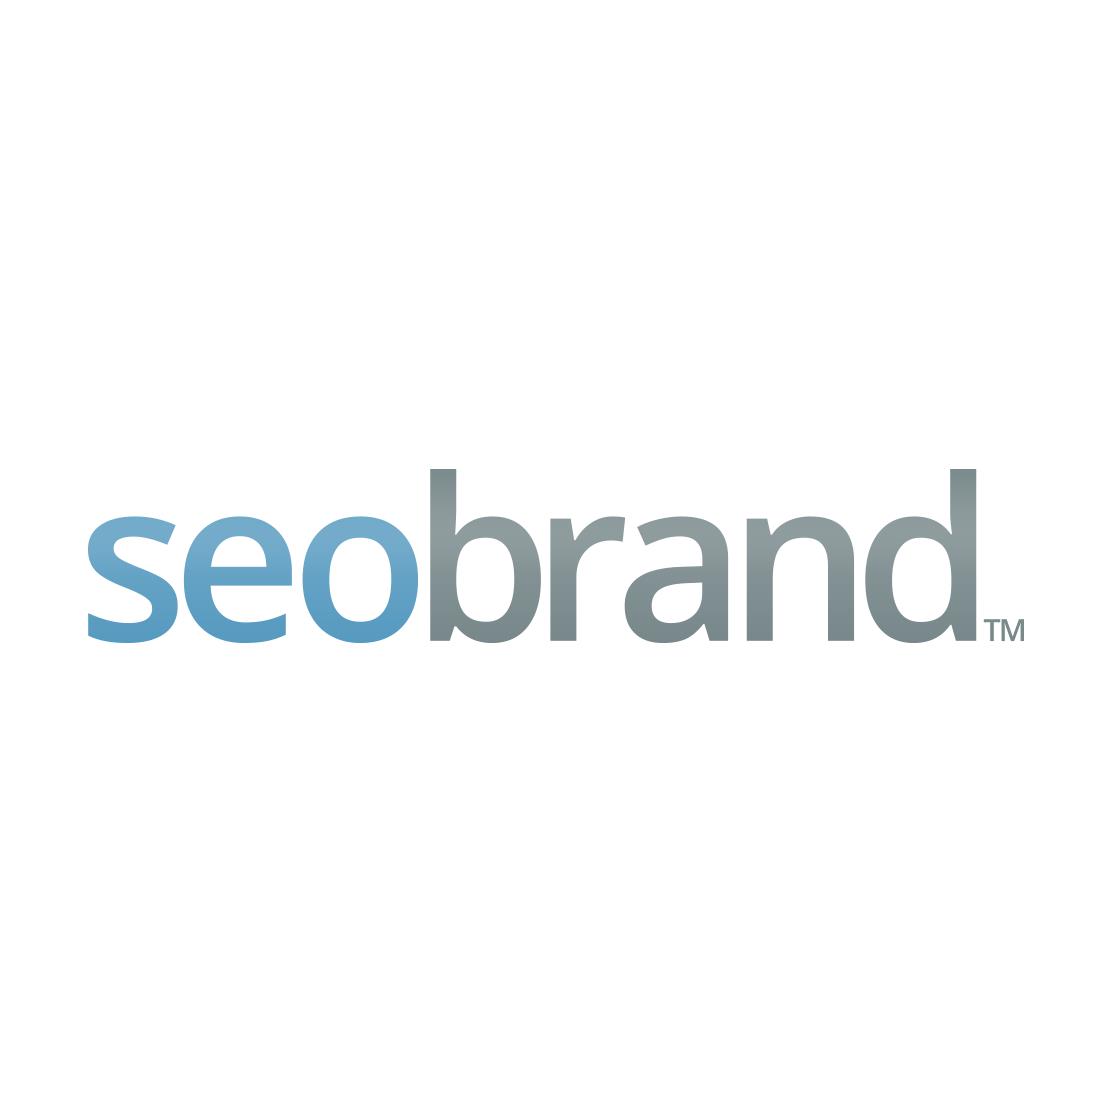 Best New York SEO Agency Logo: SEO Brand